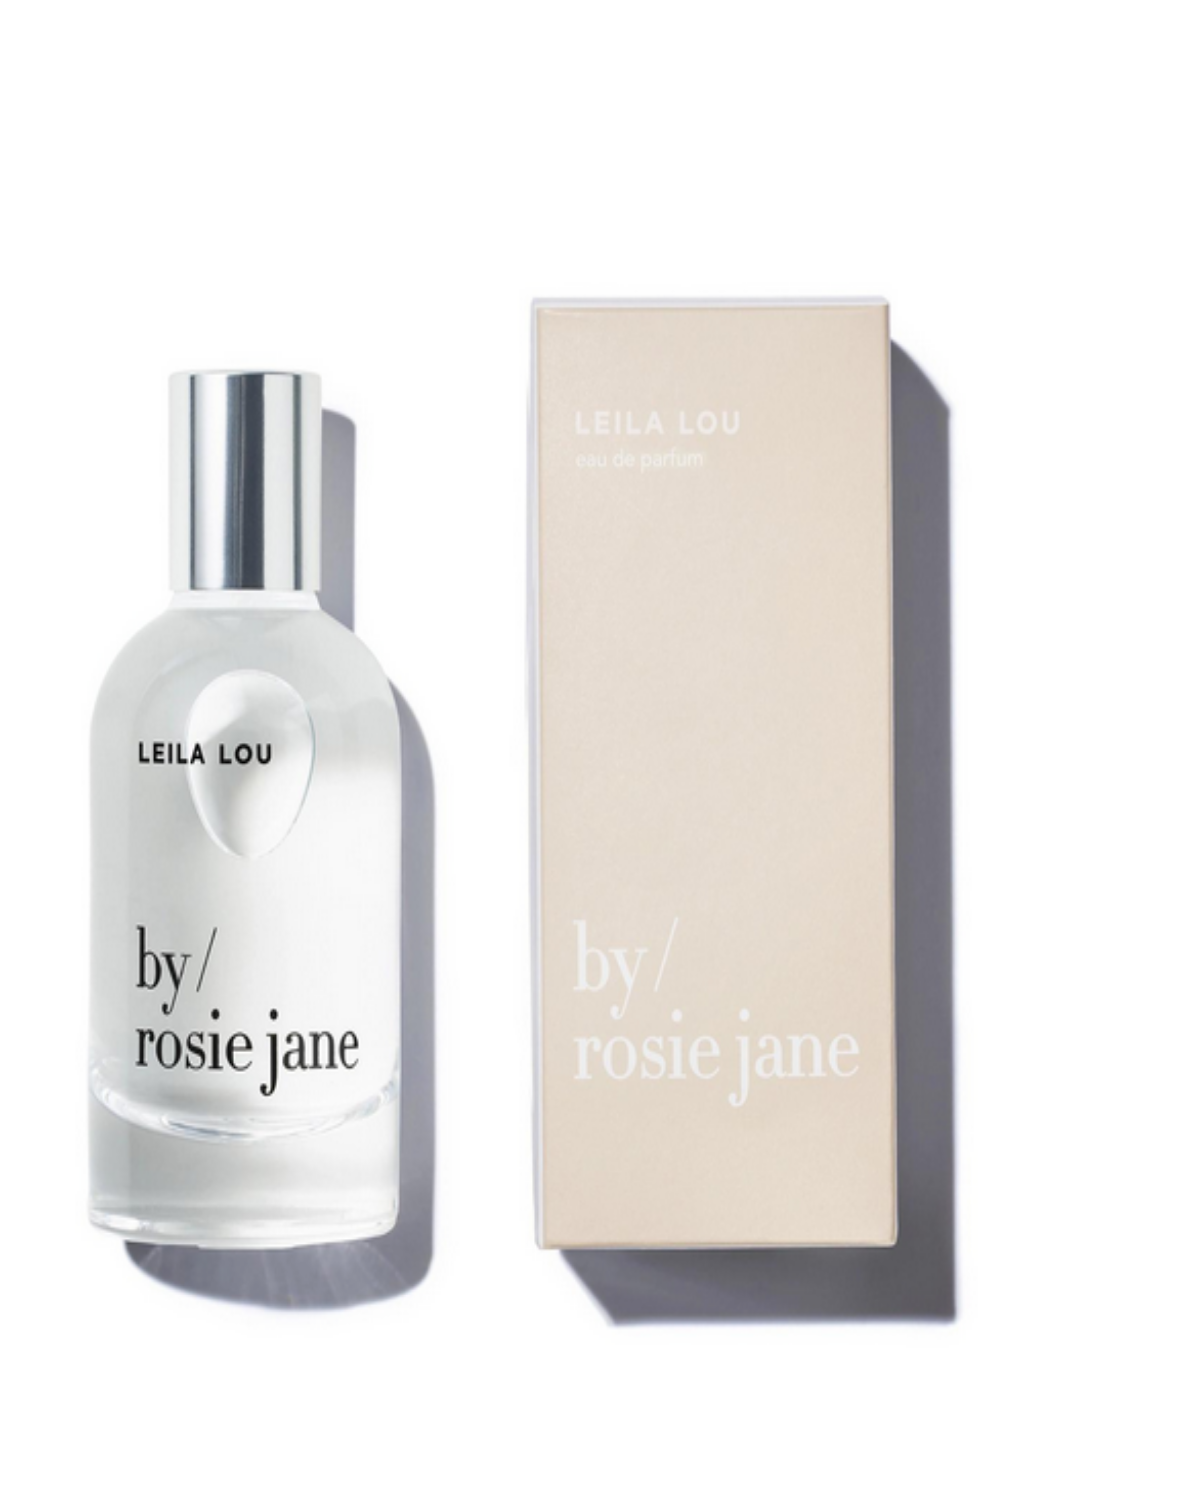 Leila Lou Eau de Parfum by Rosie Jane